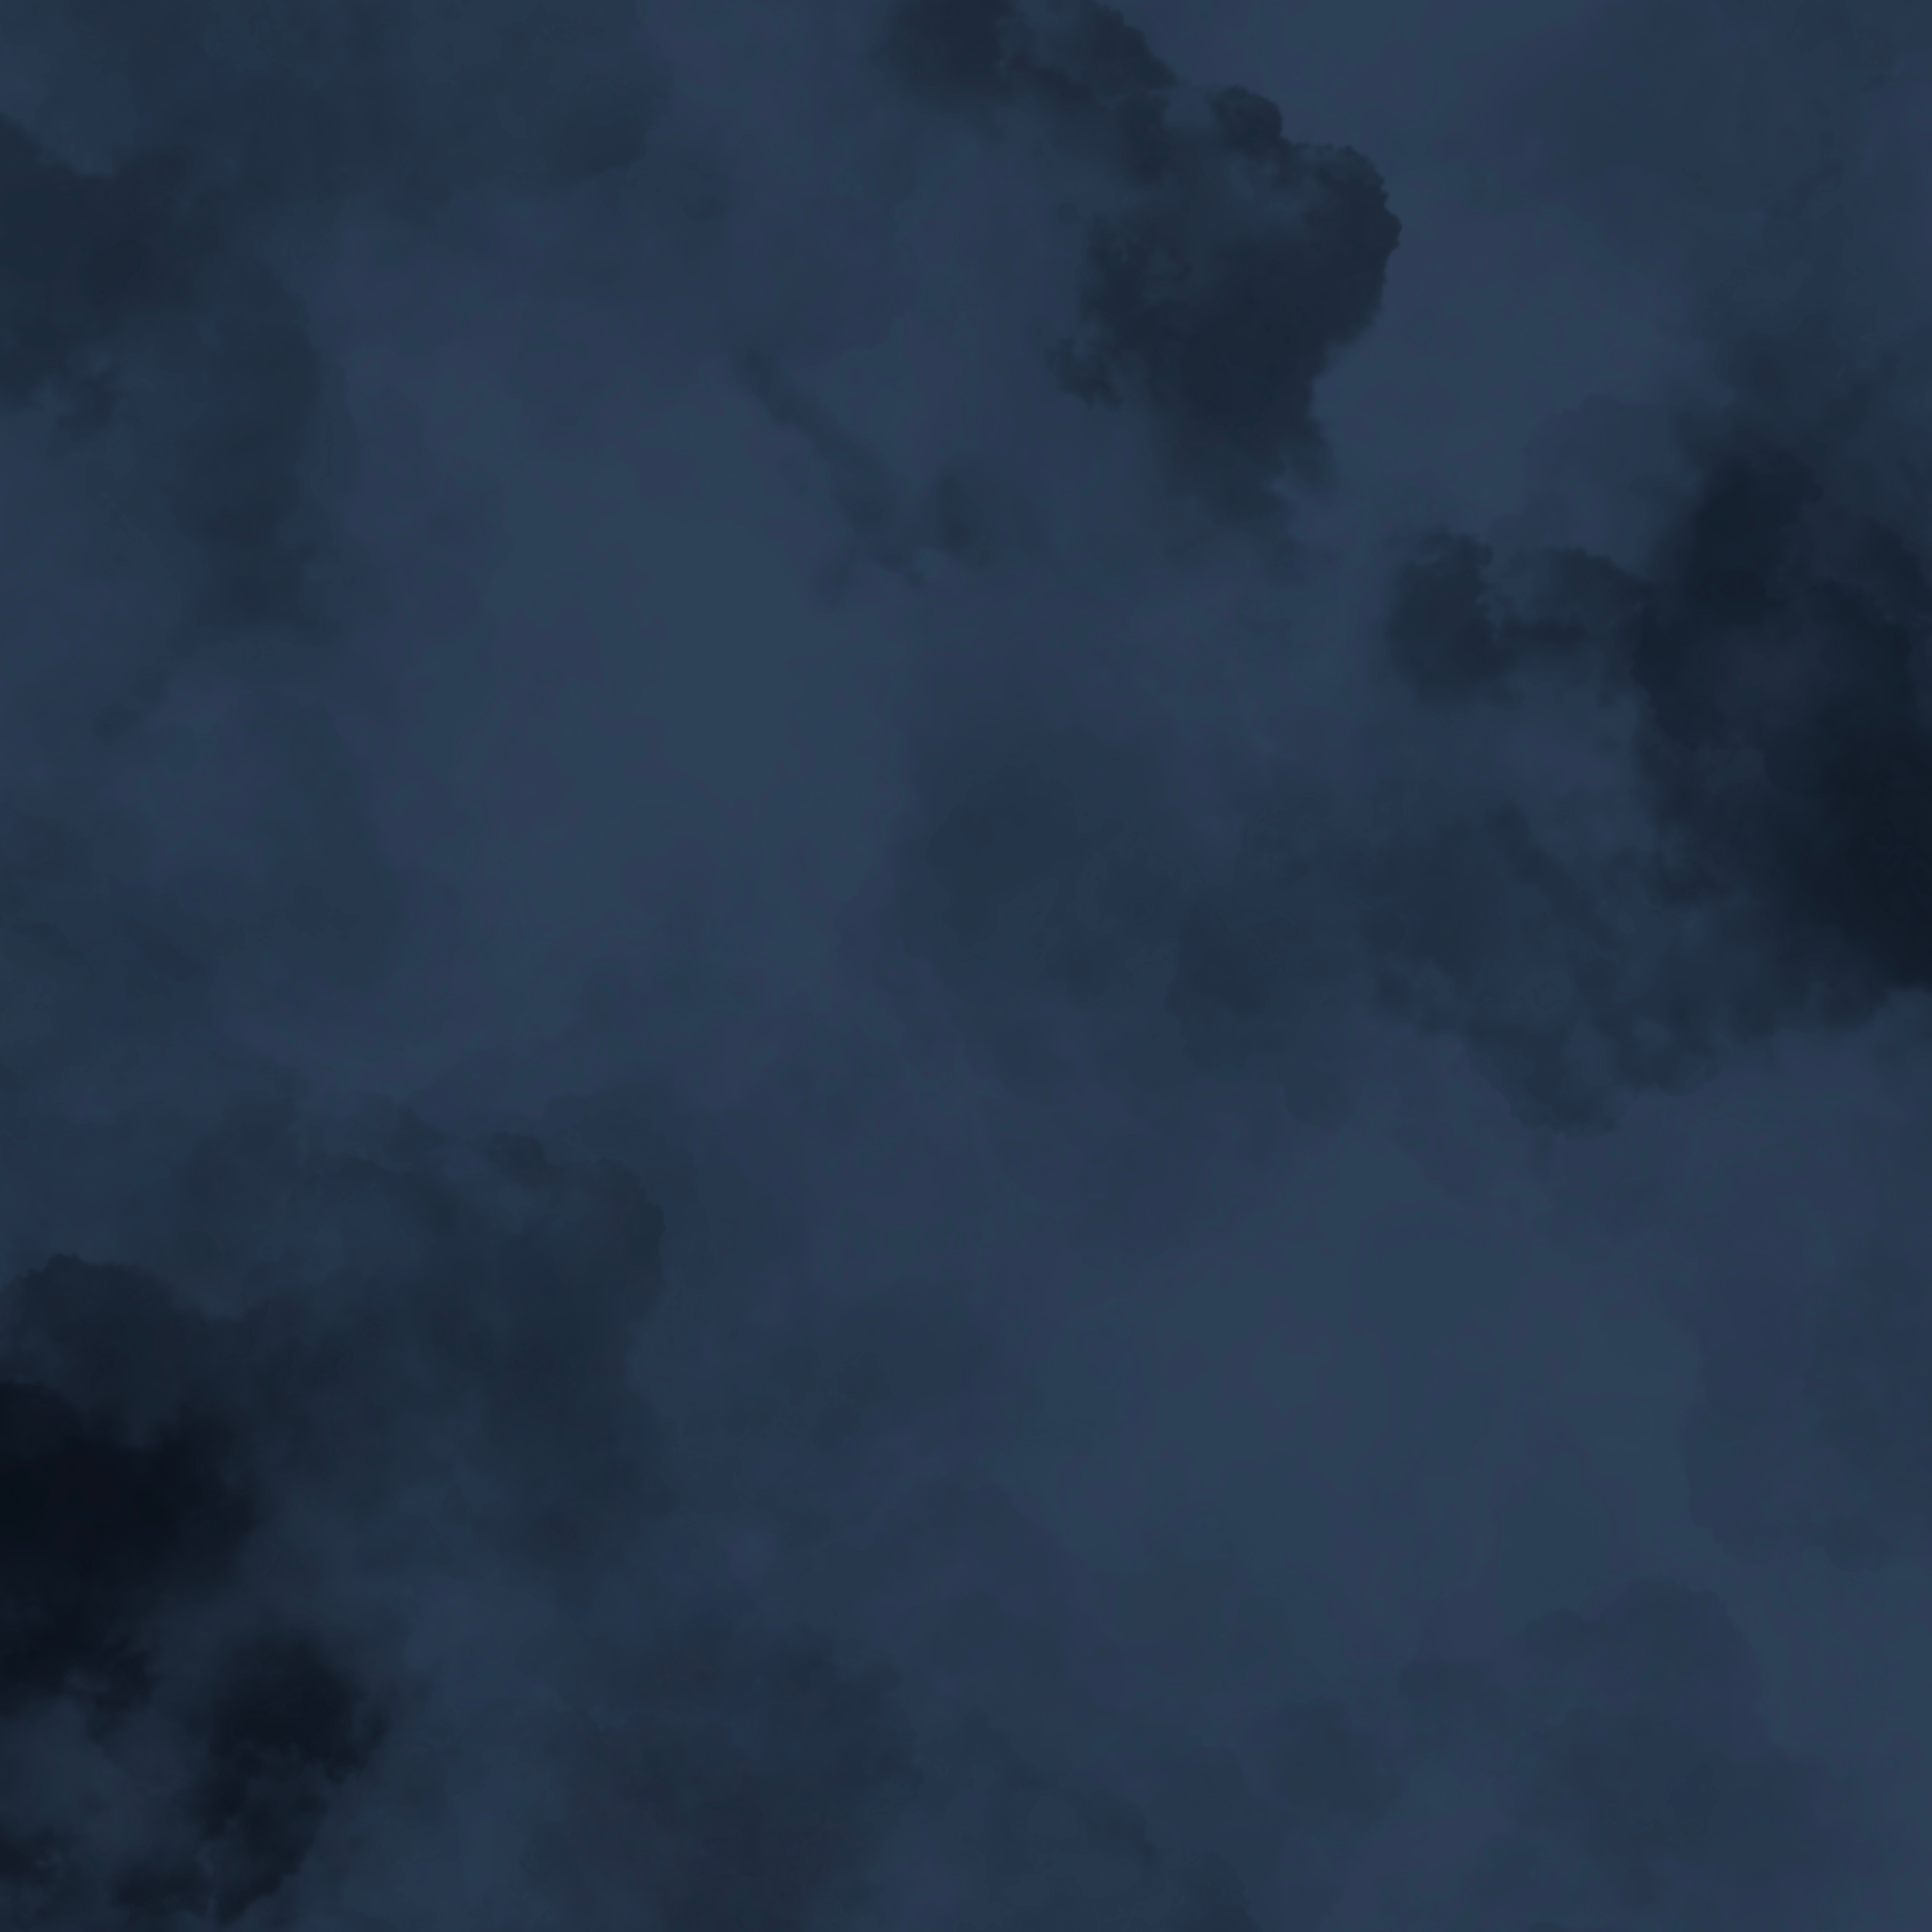 dark blue textured background